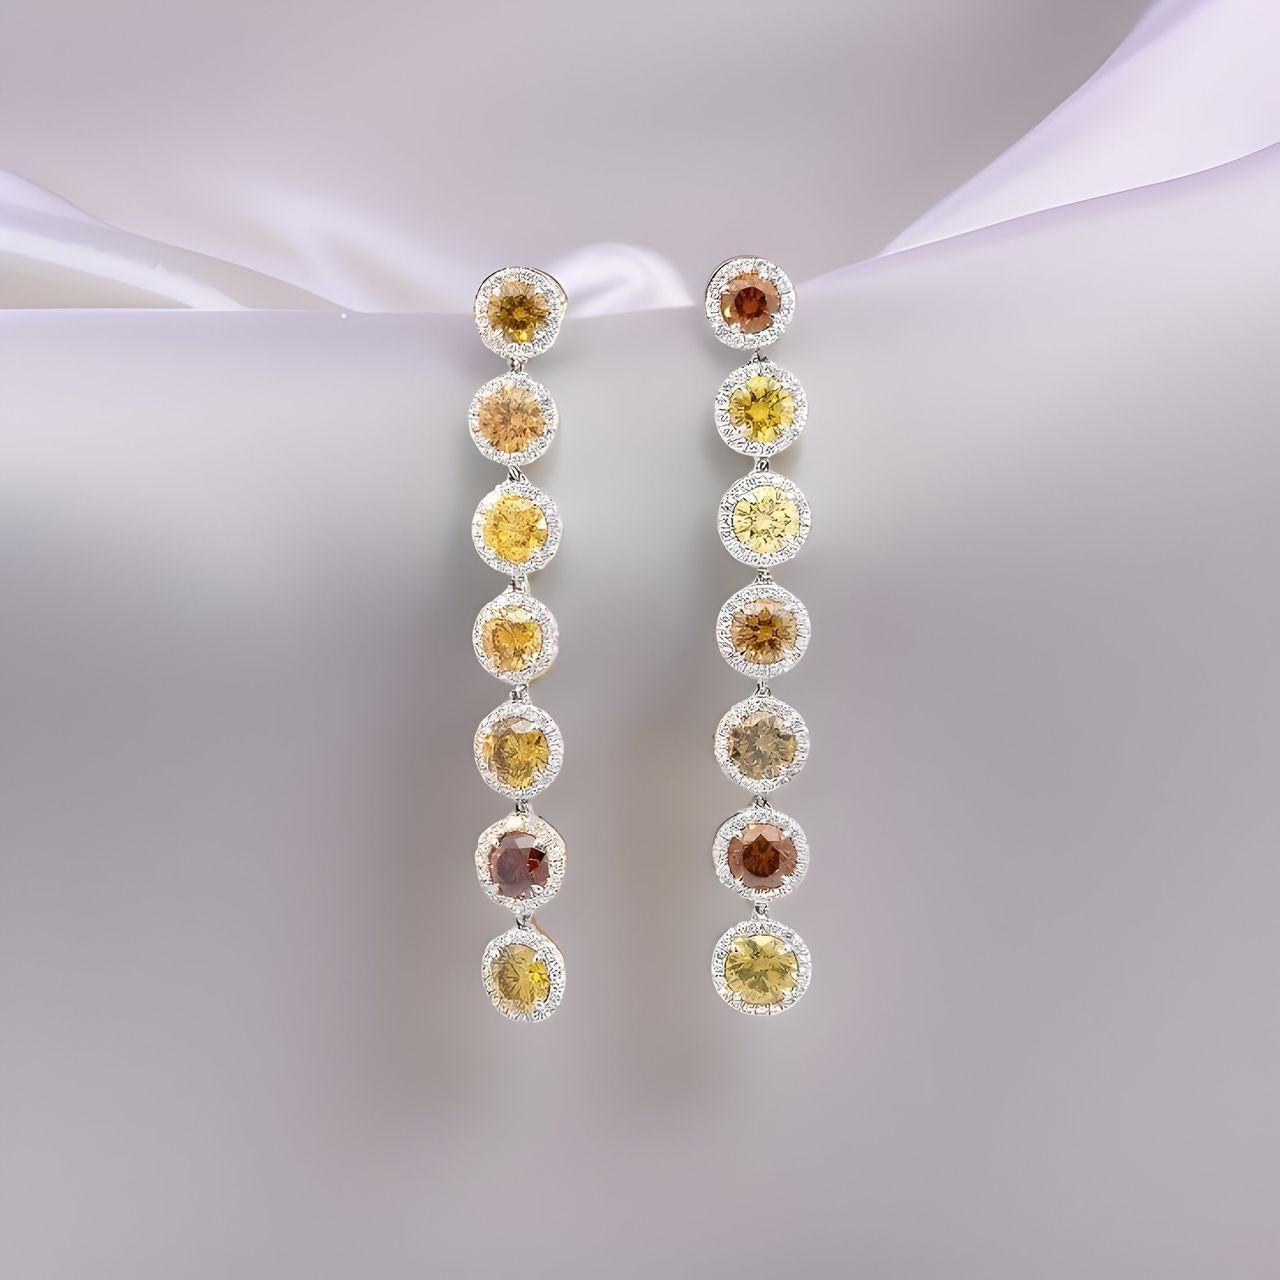 Atemberaubende und lebhafte gelbe, braune und orangefarbene Halo-Diamantohrringe in natürlicher Fancy-Farbe.
Runde Schliffe mit einem Gesamtgewicht von 6,75 Karat, akzentuiert durch Mikropflaster